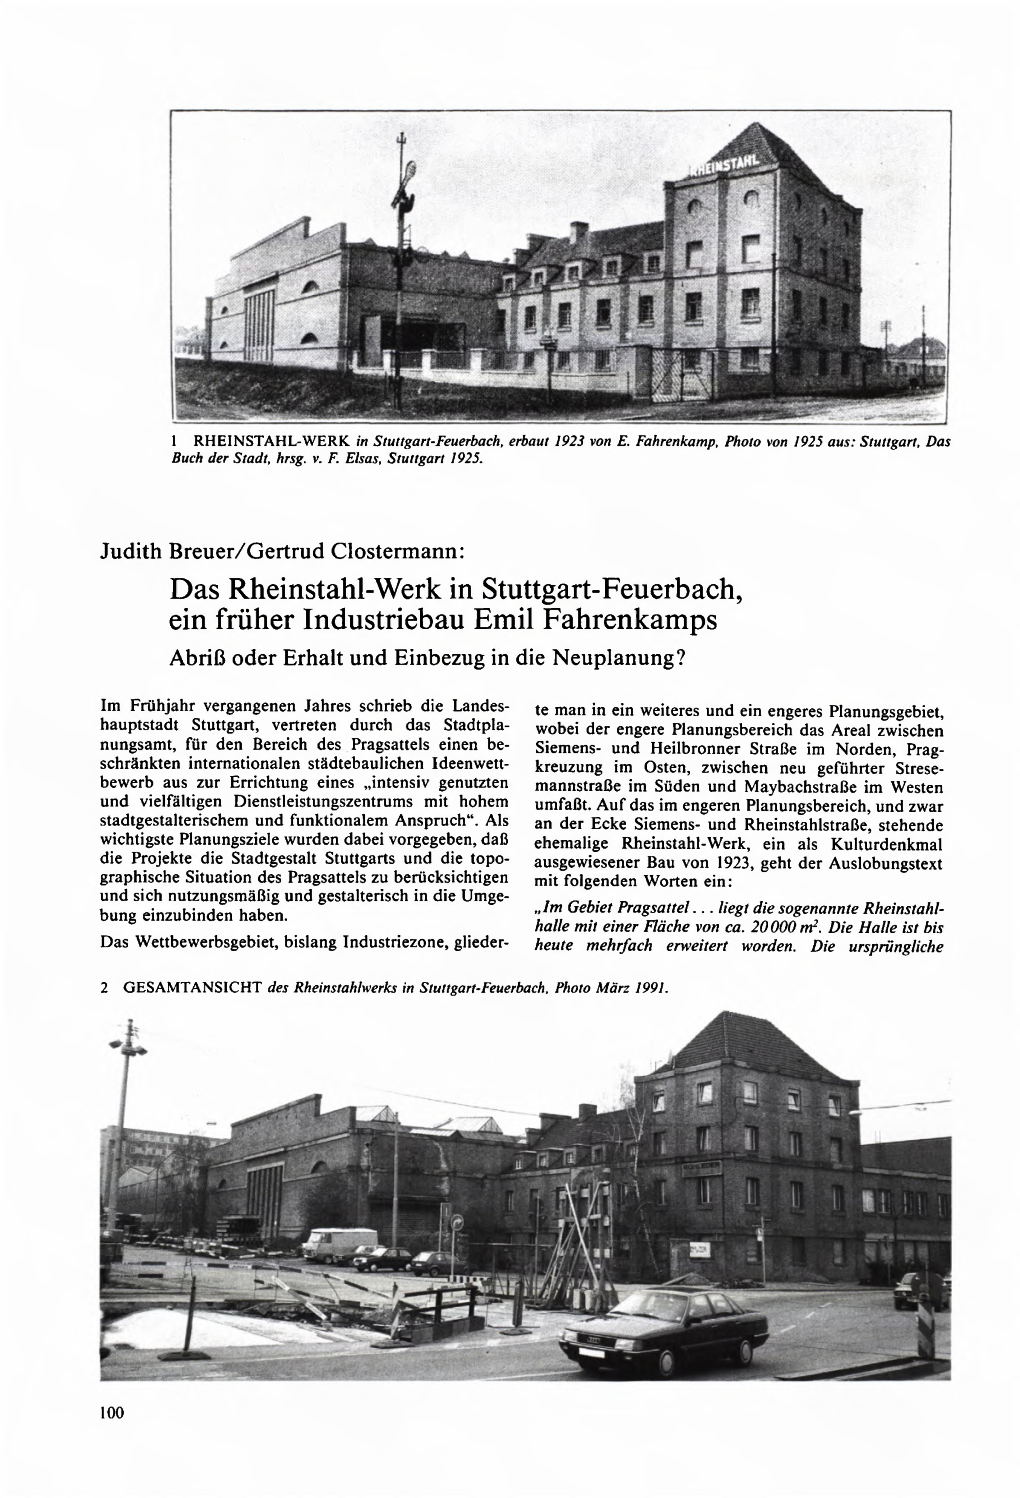 1 RHEINSTAHL-WERK in Sluttgarl-Feuerbach, Erbaut 1923 Von E